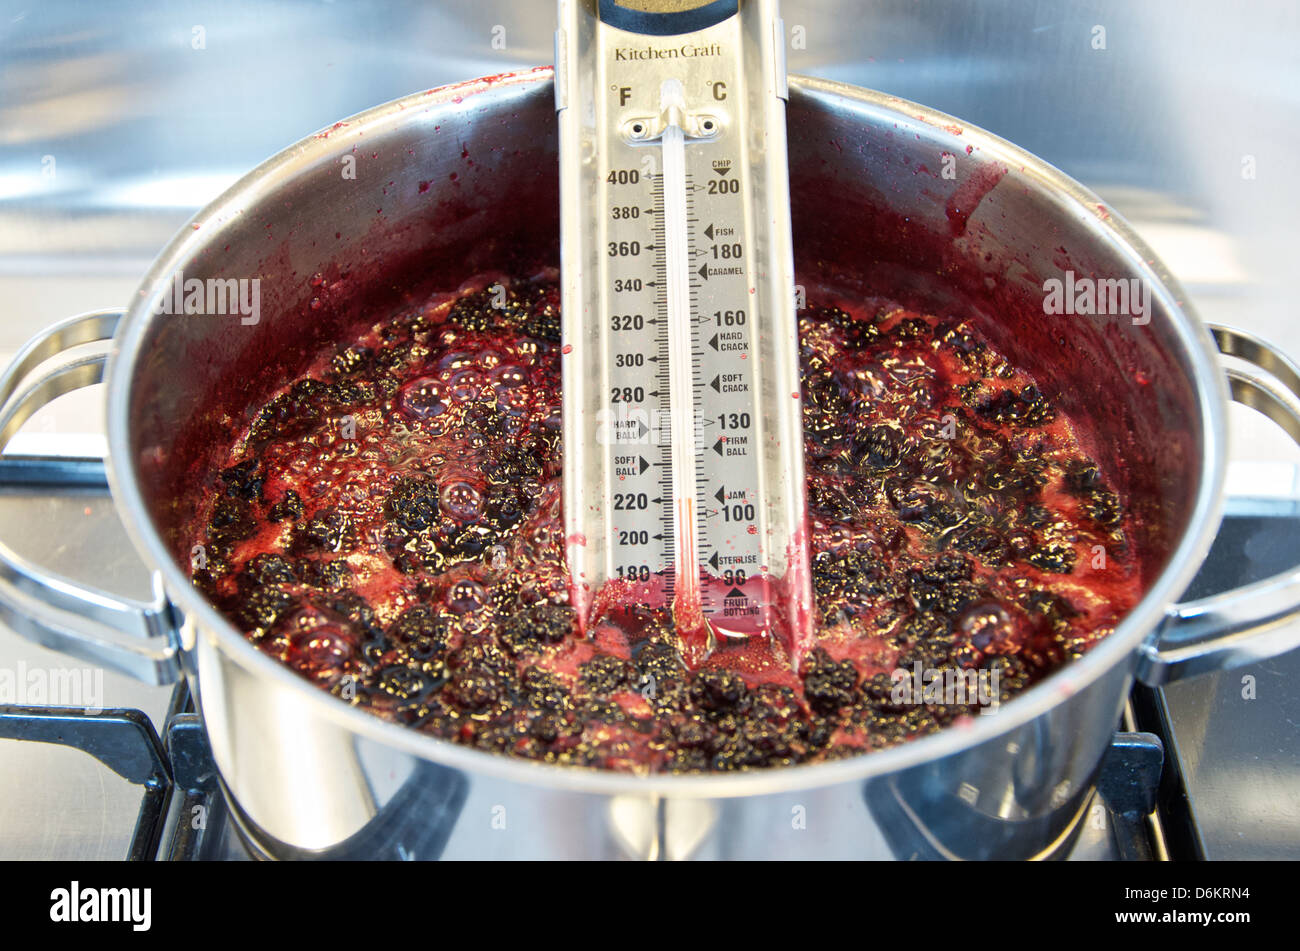 Die Jam: Schritt 8, Kochen, Brombeeren, Zucker und Wasser erreichen die  Einstellung Temperatur auf dem Thermometer Stockfotografie - Alamy